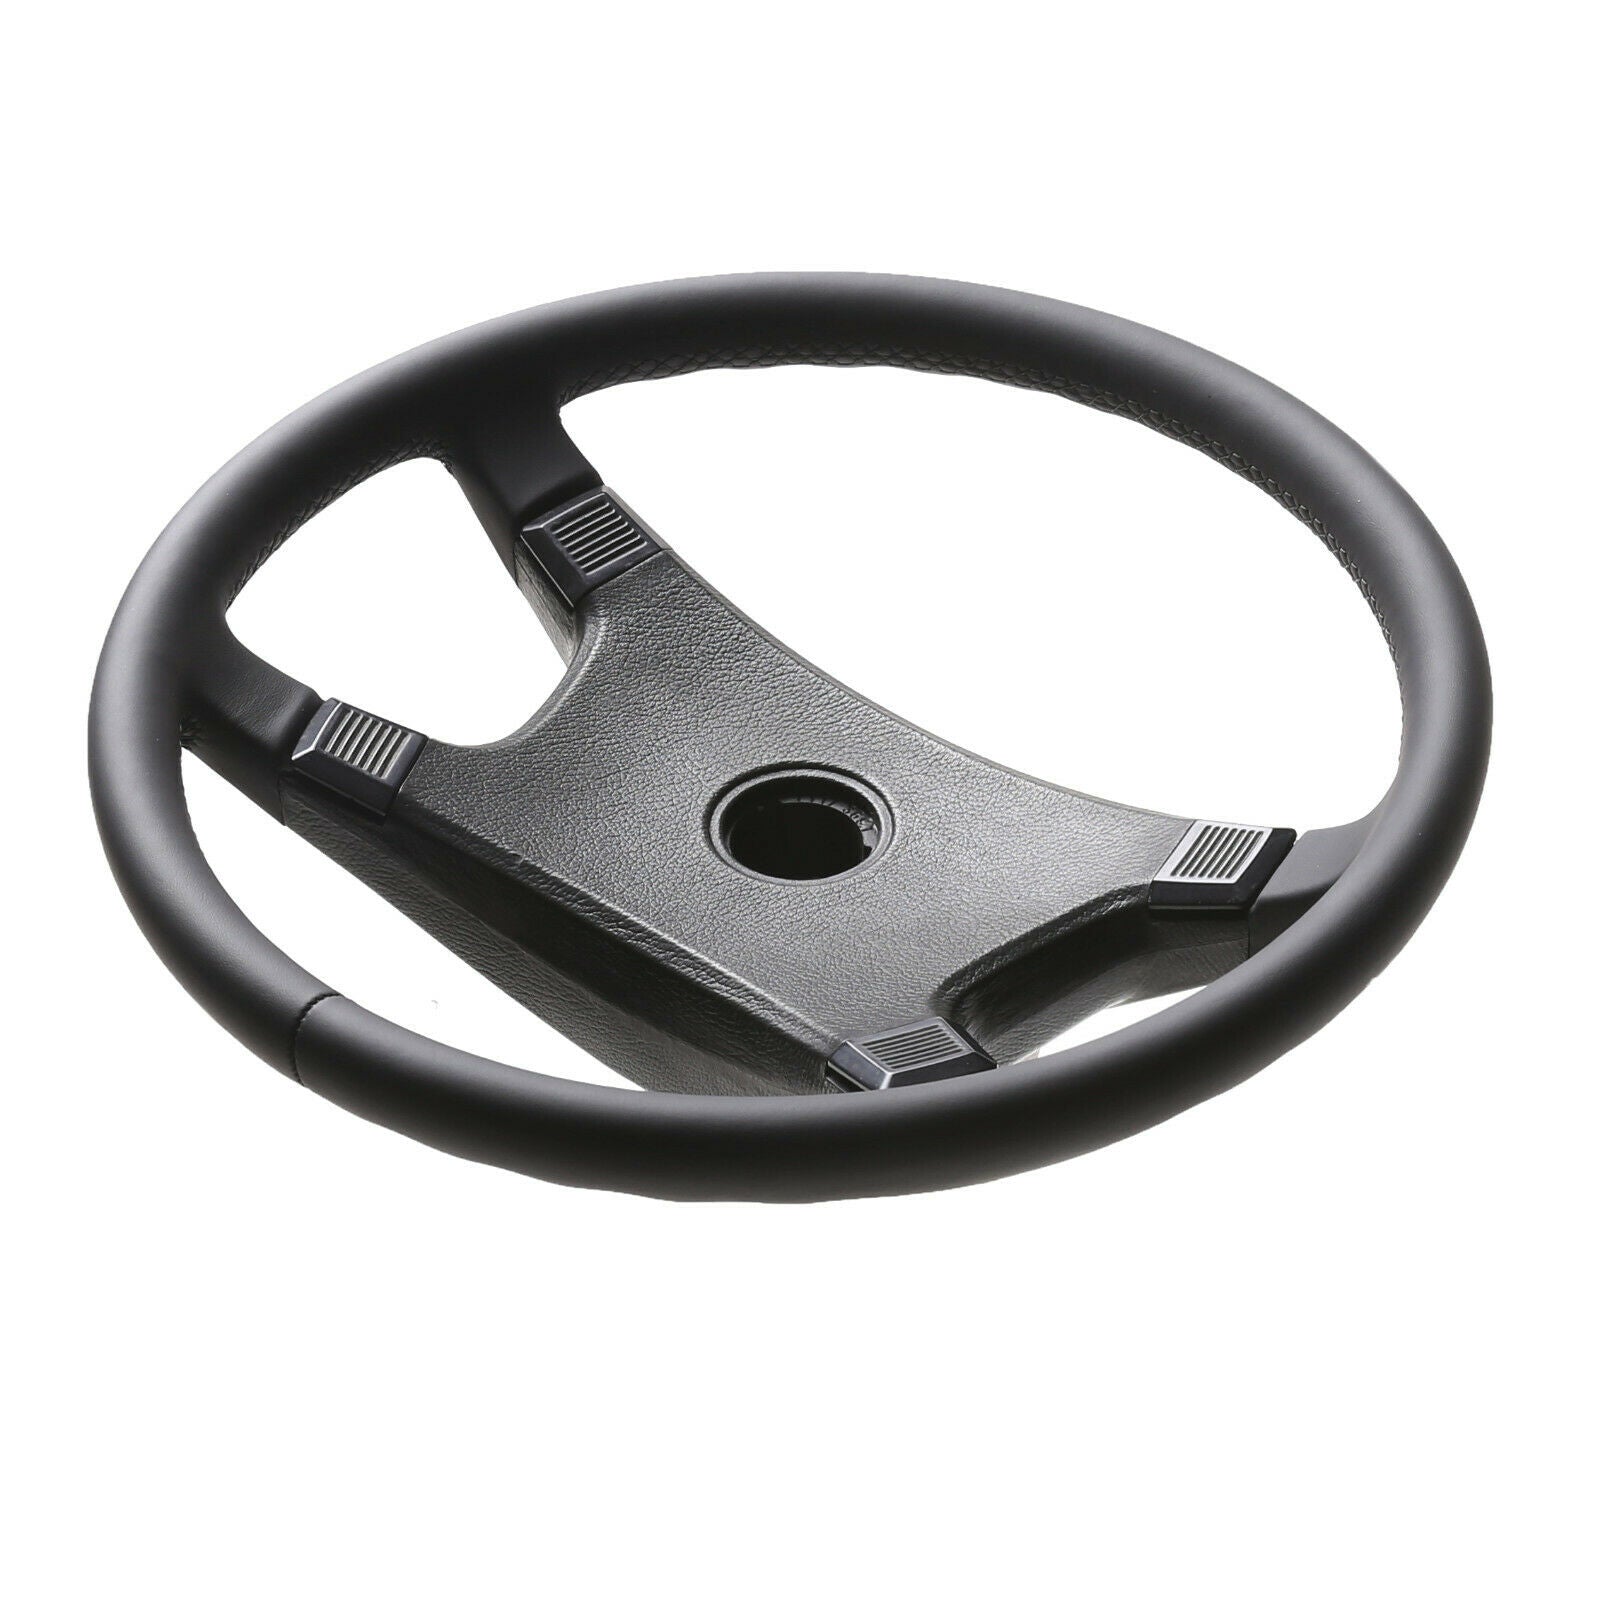 Steering Wheel Test